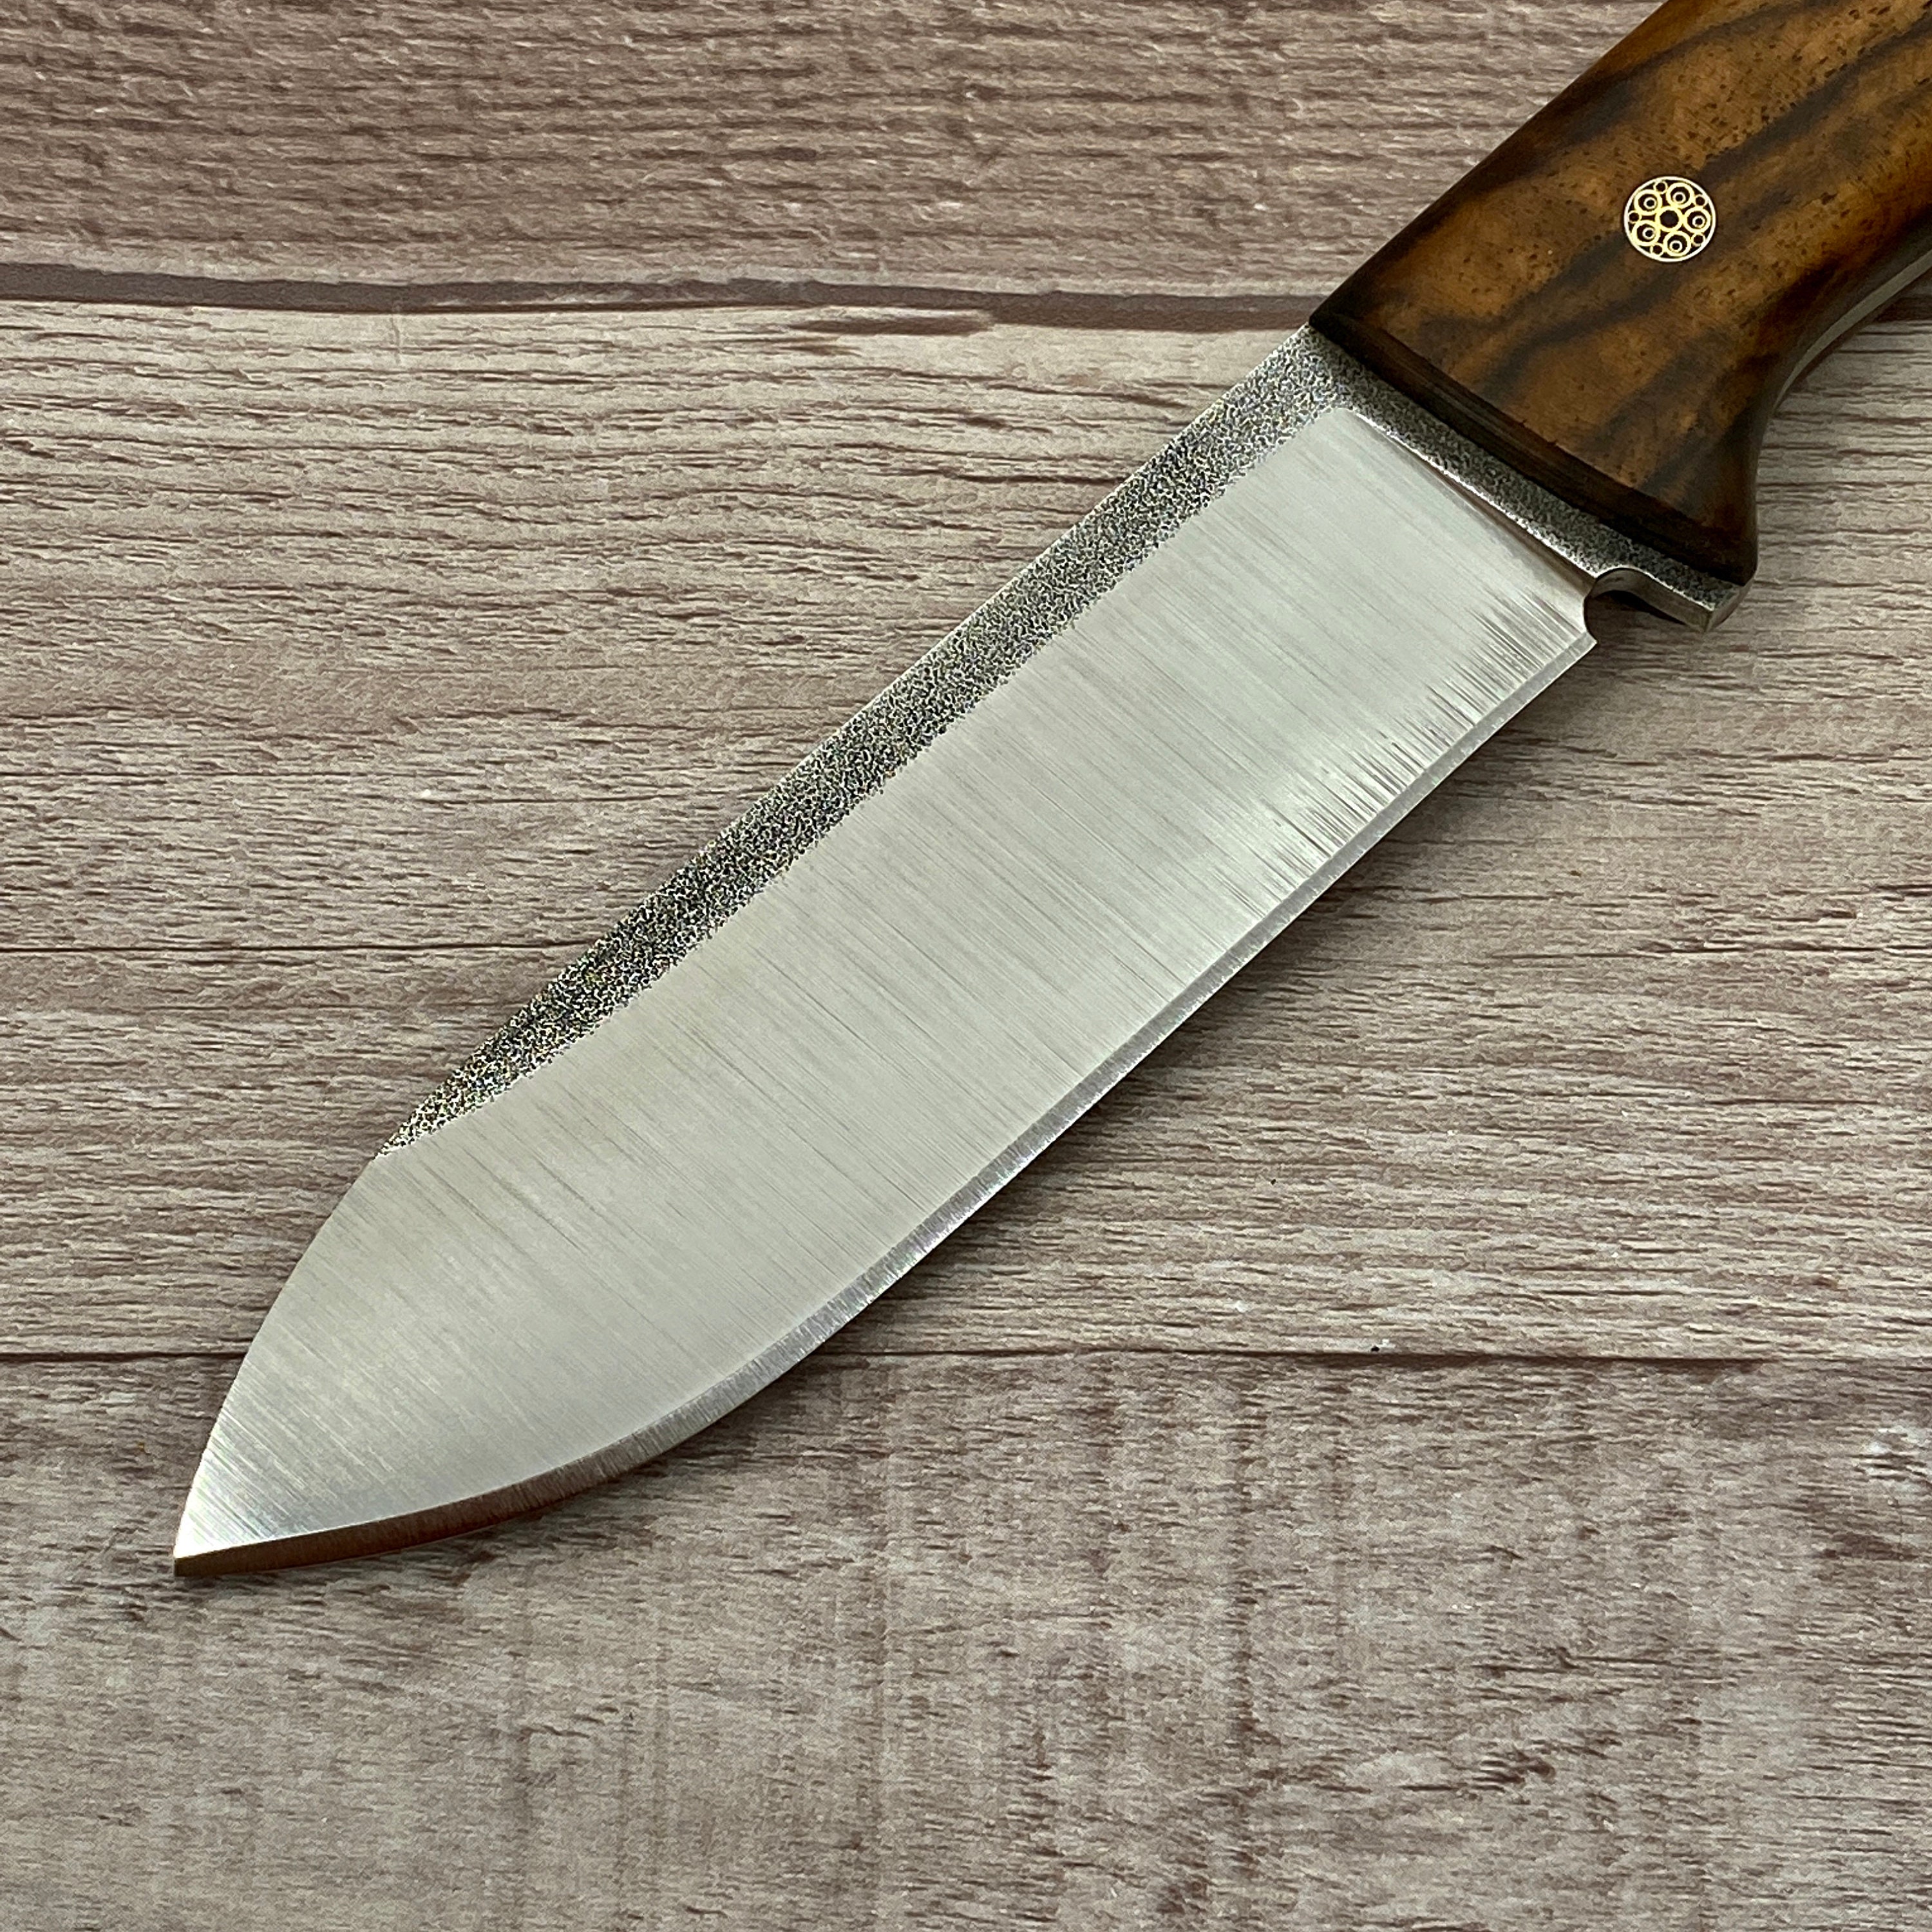 Cuchillo de caza profesional, funda de cuero, cuchillo Bushcraft, cuchillo  Skinner, mango de madera de nogal Bohler N690 cuchillo de camping, regalo  de novios -  México